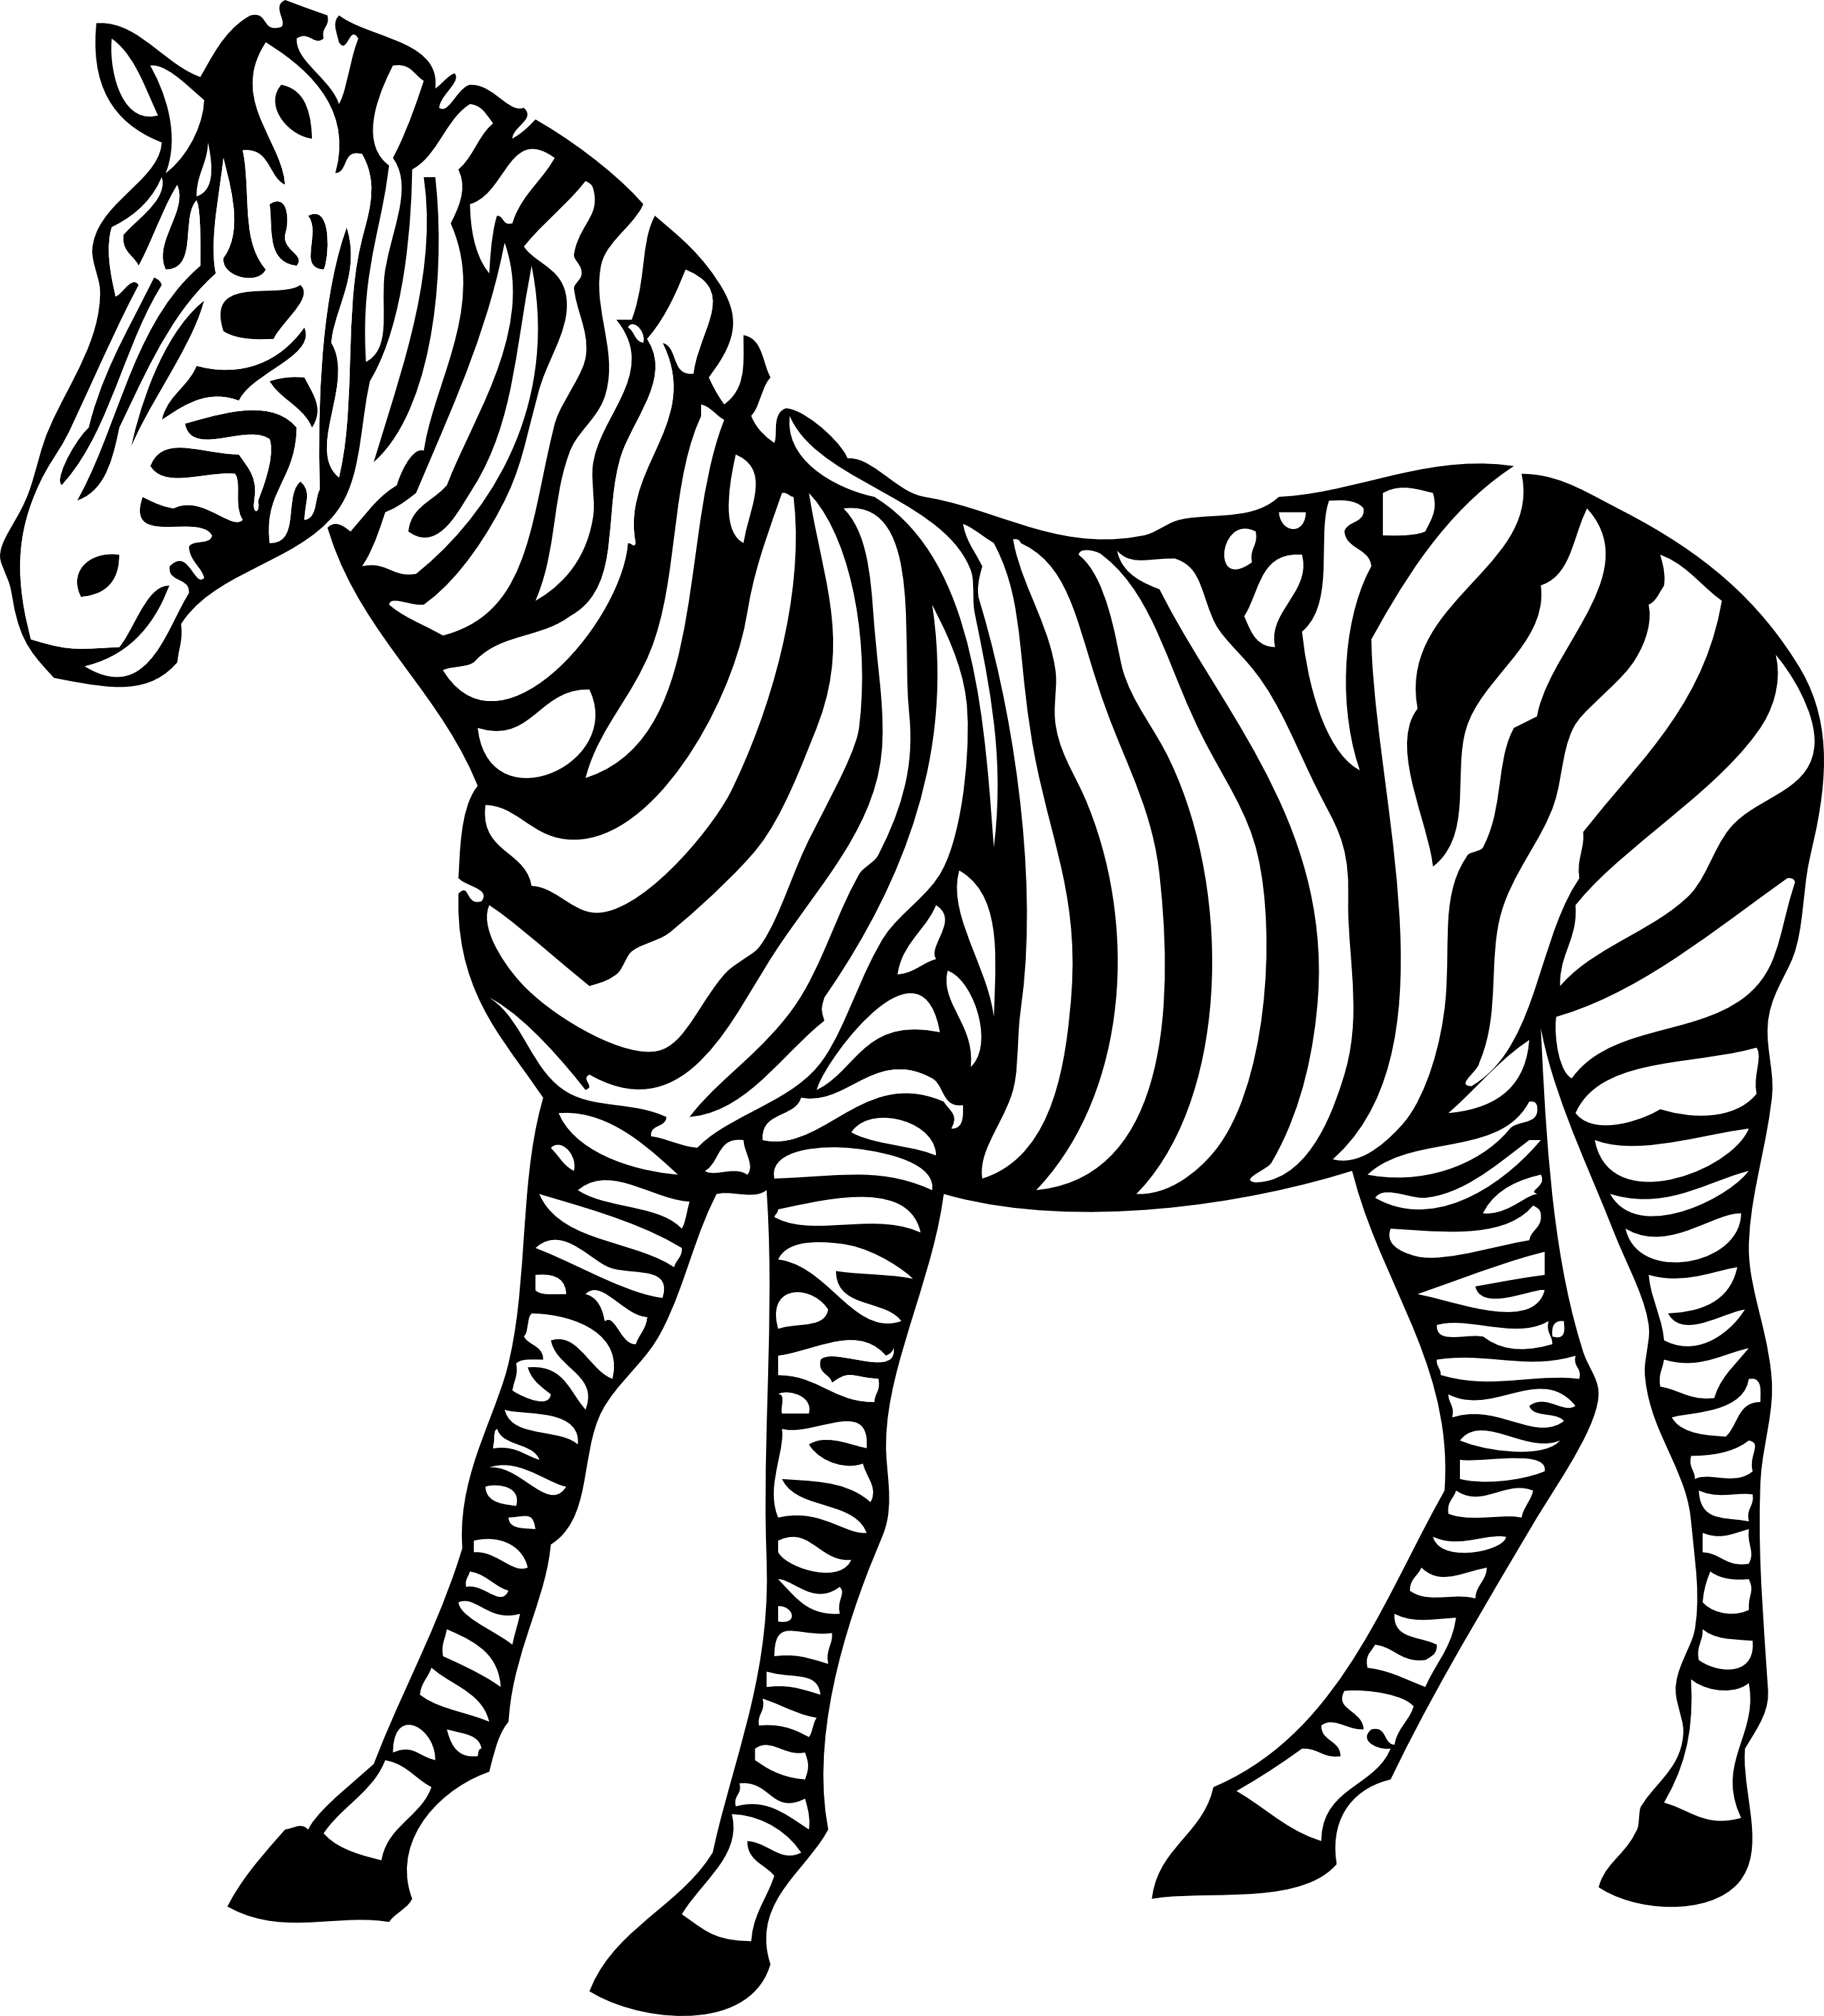 zebra running clipart - photo #41